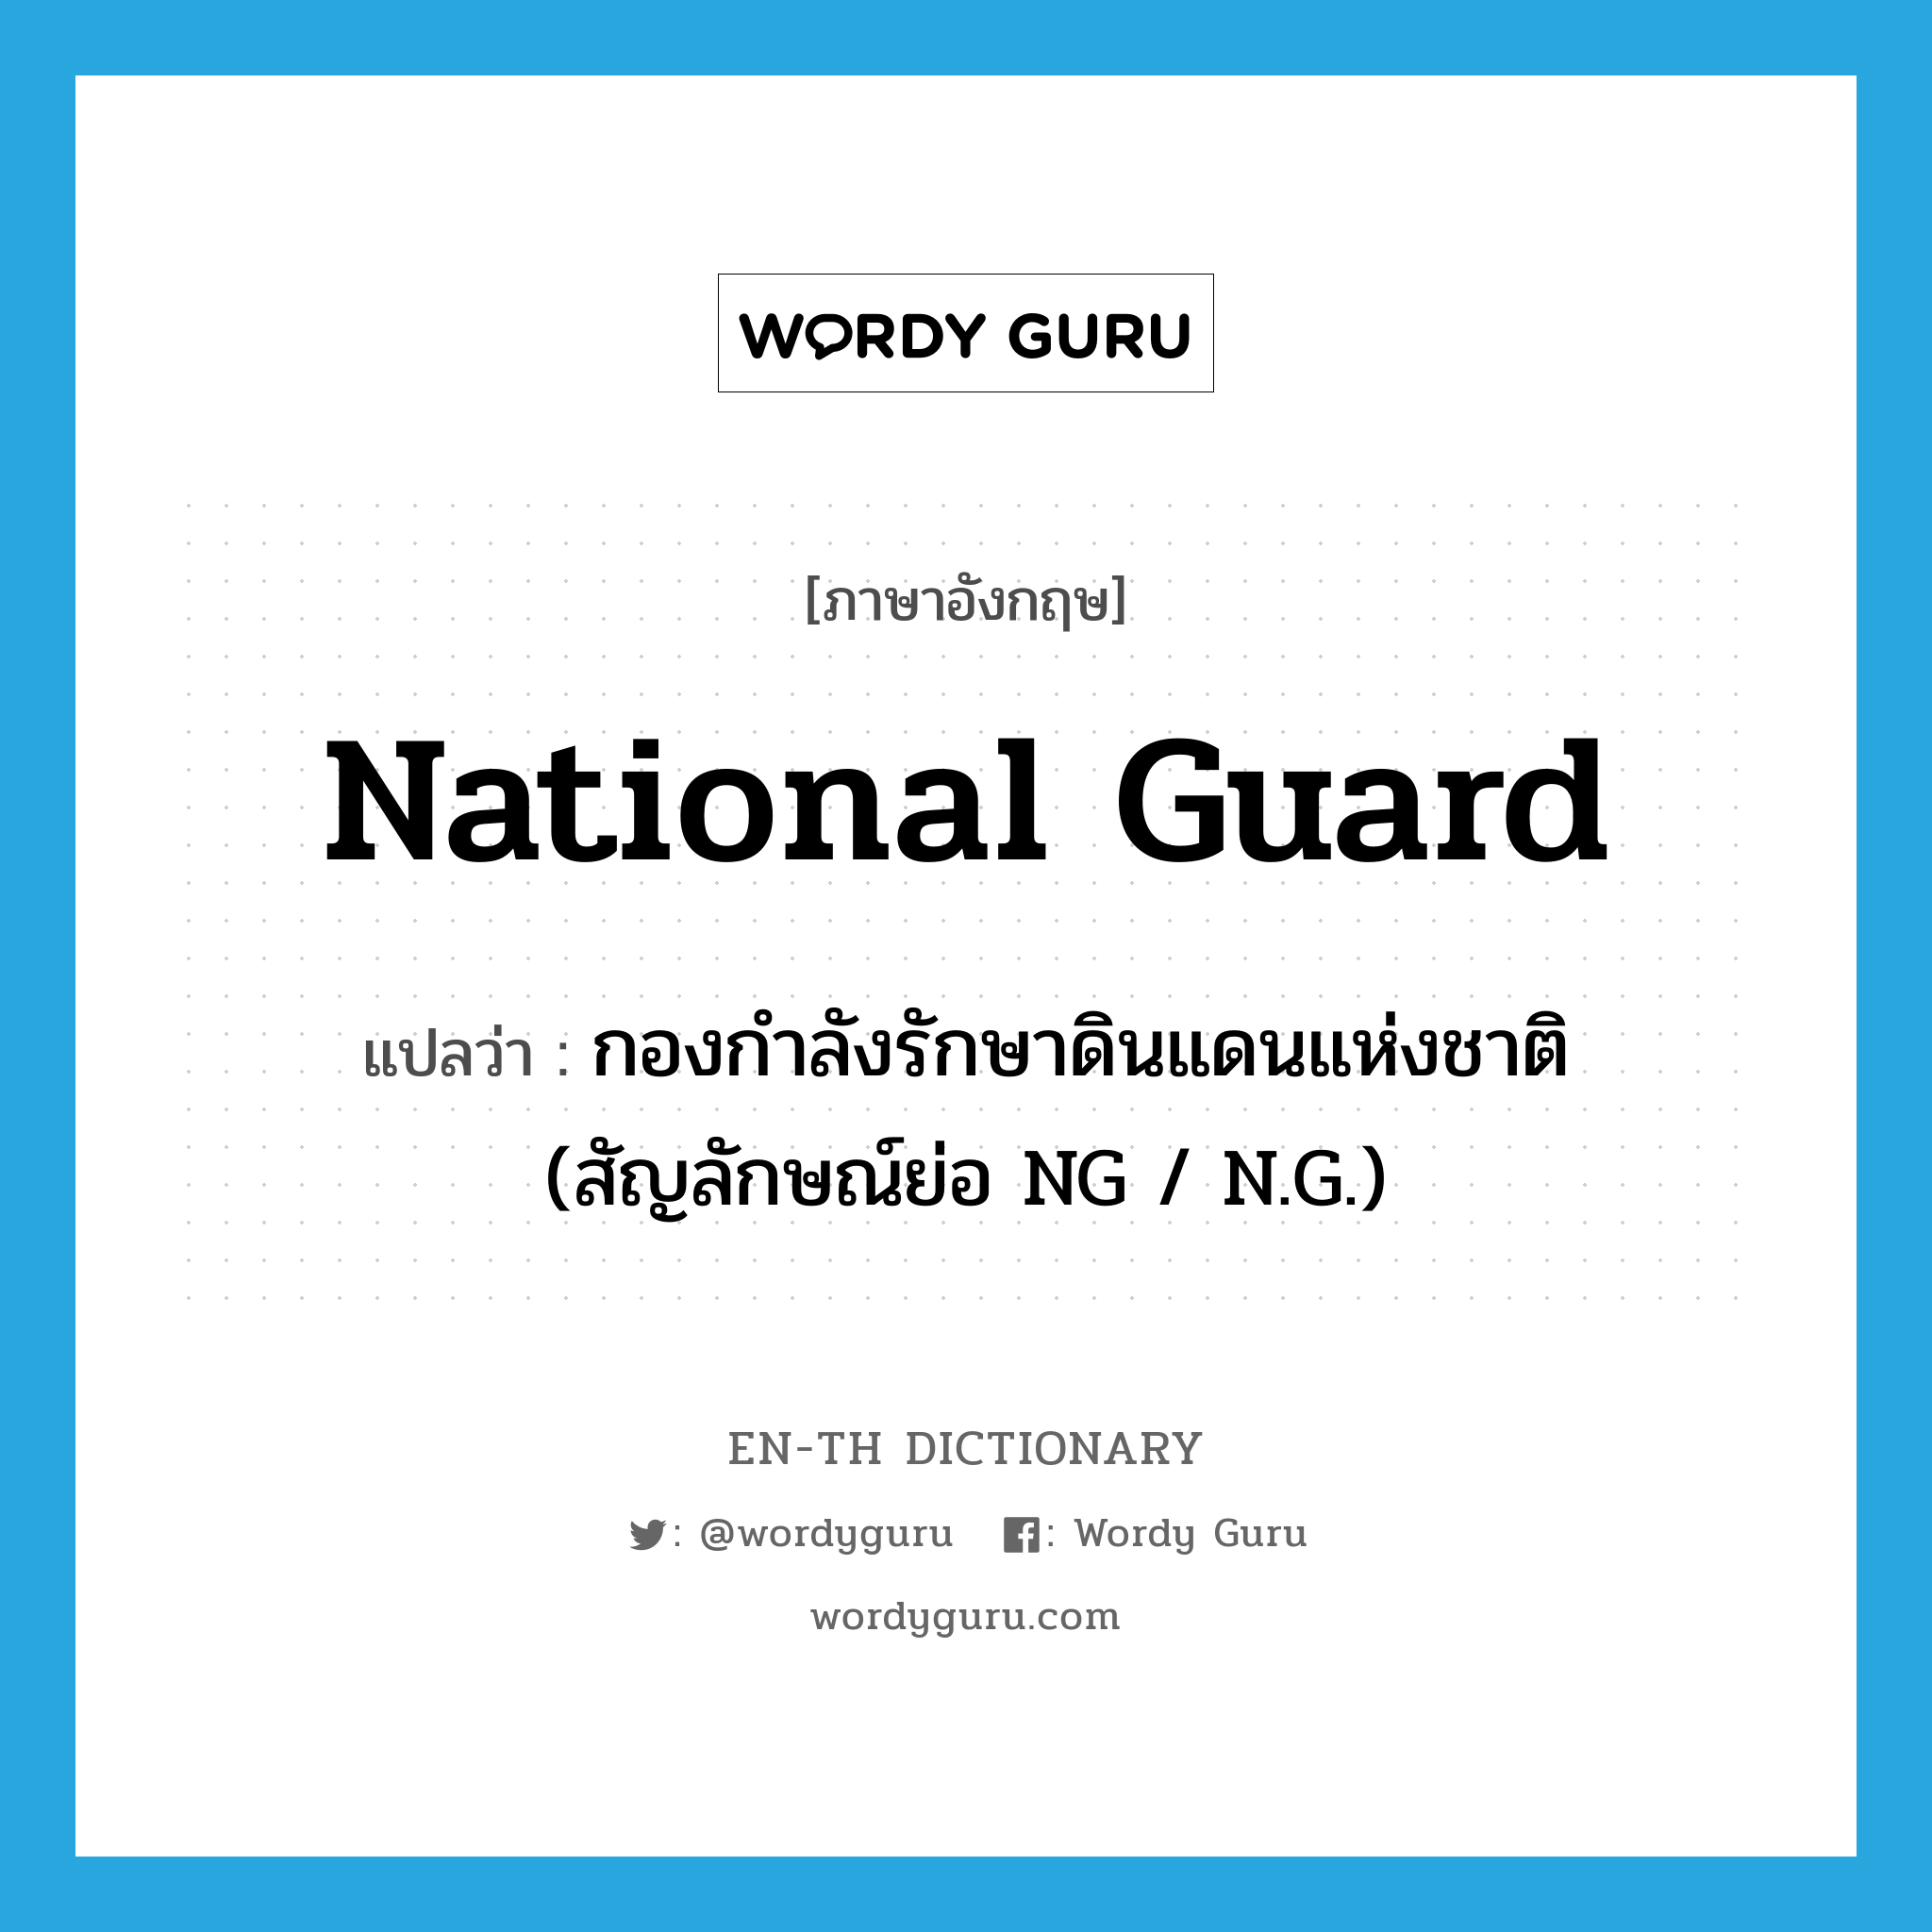 กองกำลังรักษาดินแดนแห่งชาติ (สัญลักษณ์ย่อ NG / N.G.) ภาษาอังกฤษ?, คำศัพท์ภาษาอังกฤษ กองกำลังรักษาดินแดนแห่งชาติ (สัญลักษณ์ย่อ NG / N.G.) แปลว่า National Guard ประเภท N หมวด N